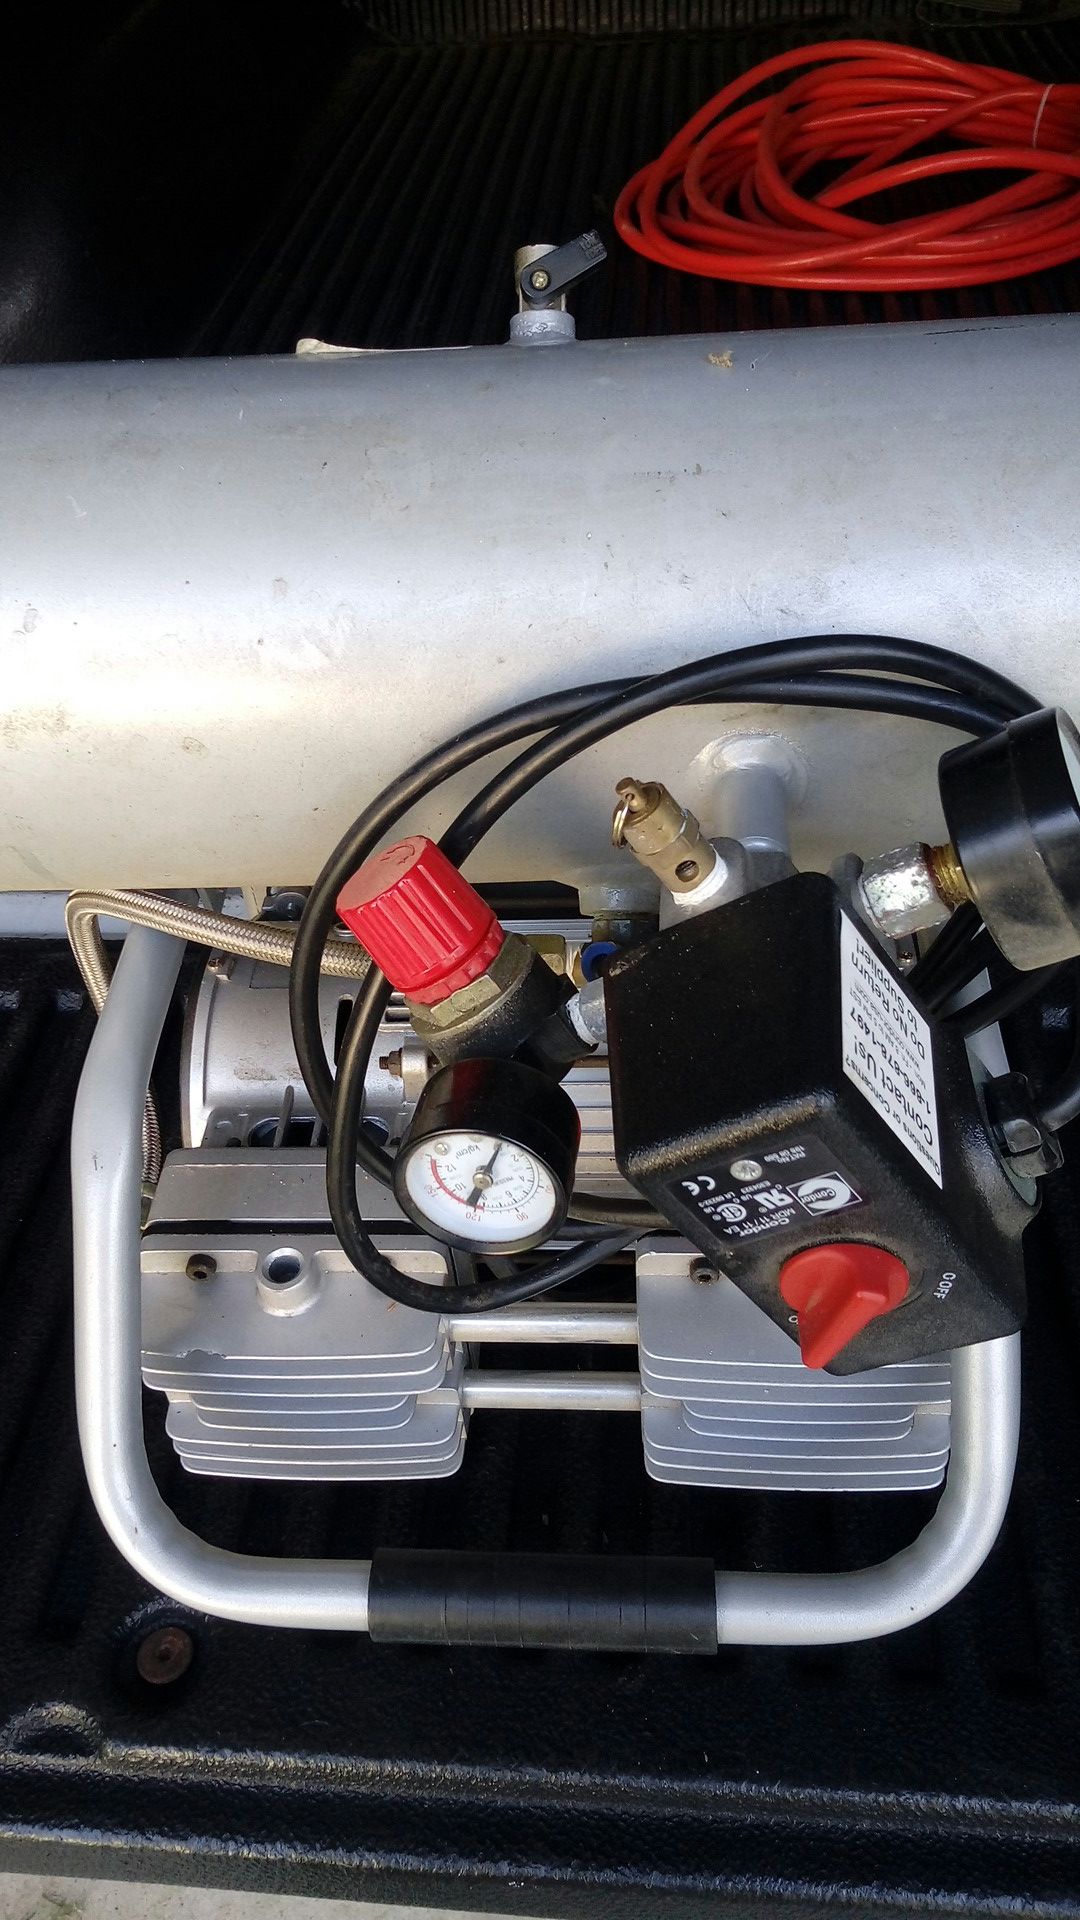 California quiet air compressor ( parts only)